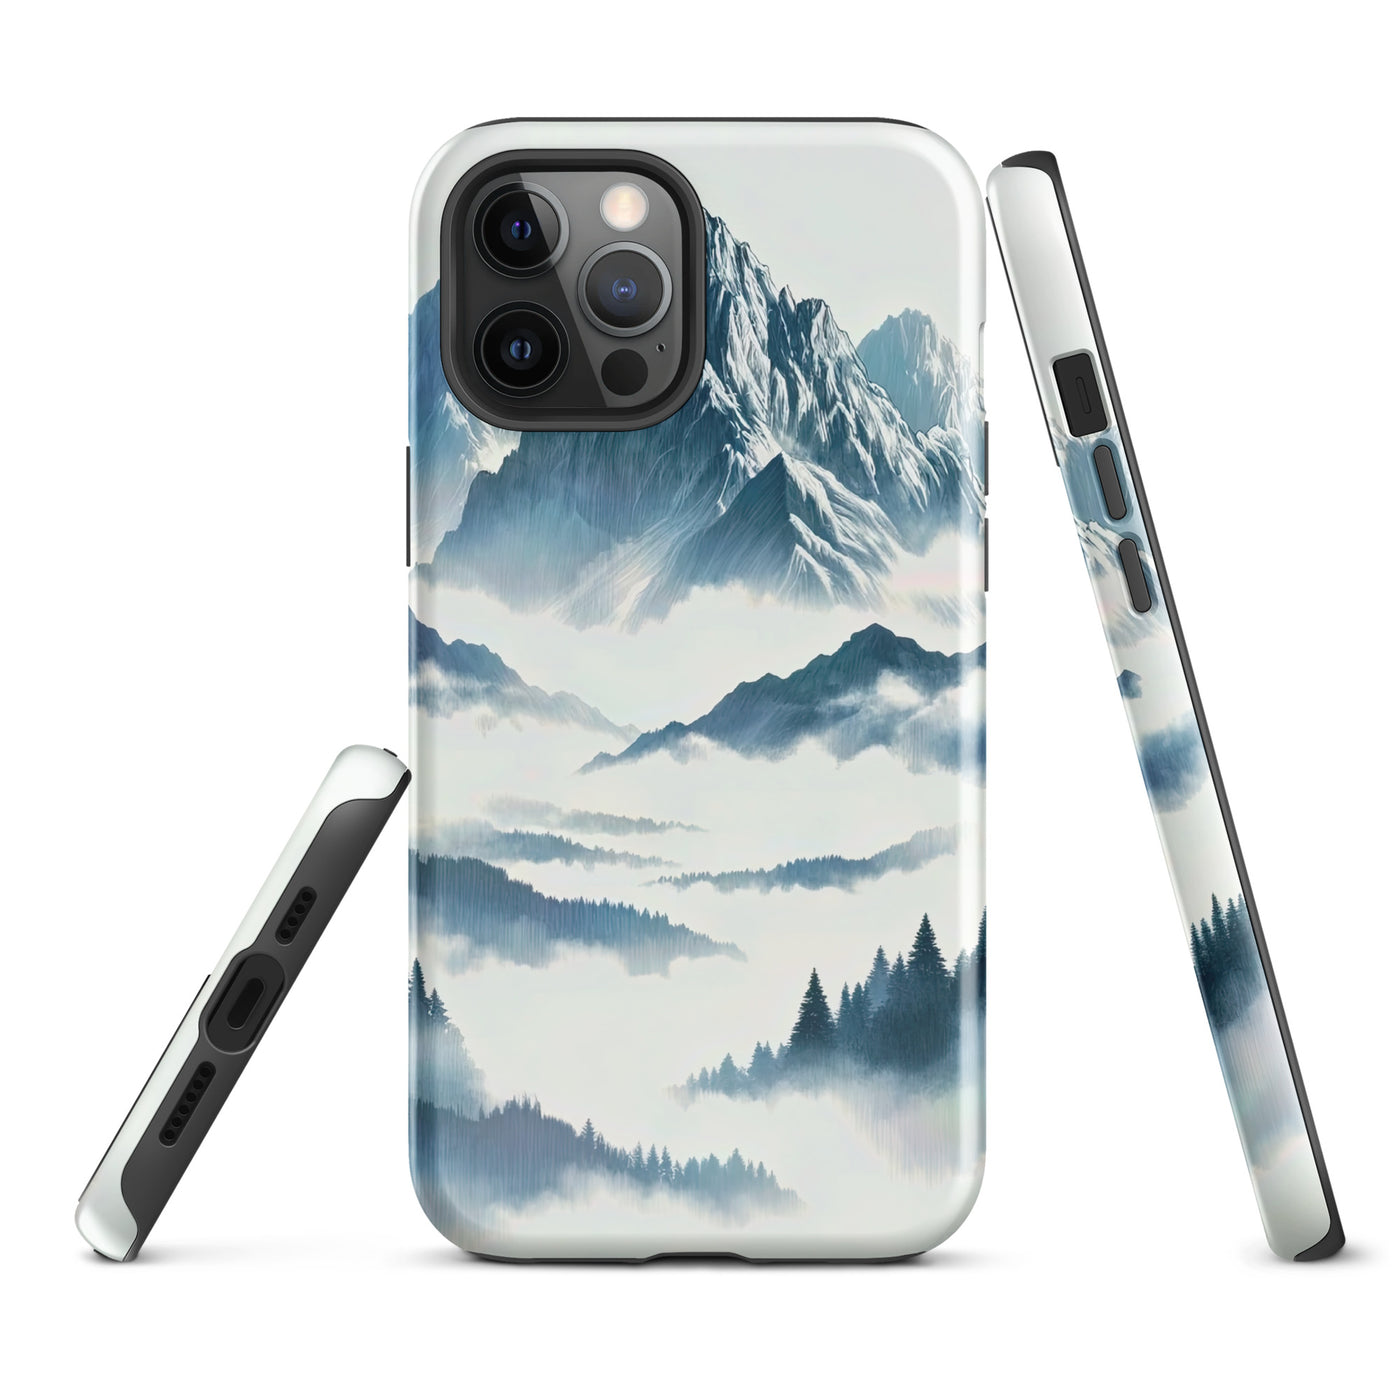 Nebeliger Alpenmorgen-Essenz, verdeckte Täler und Wälder - iPhone Schutzhülle (robust) berge xxx yyy zzz iPhone 12 Pro Max